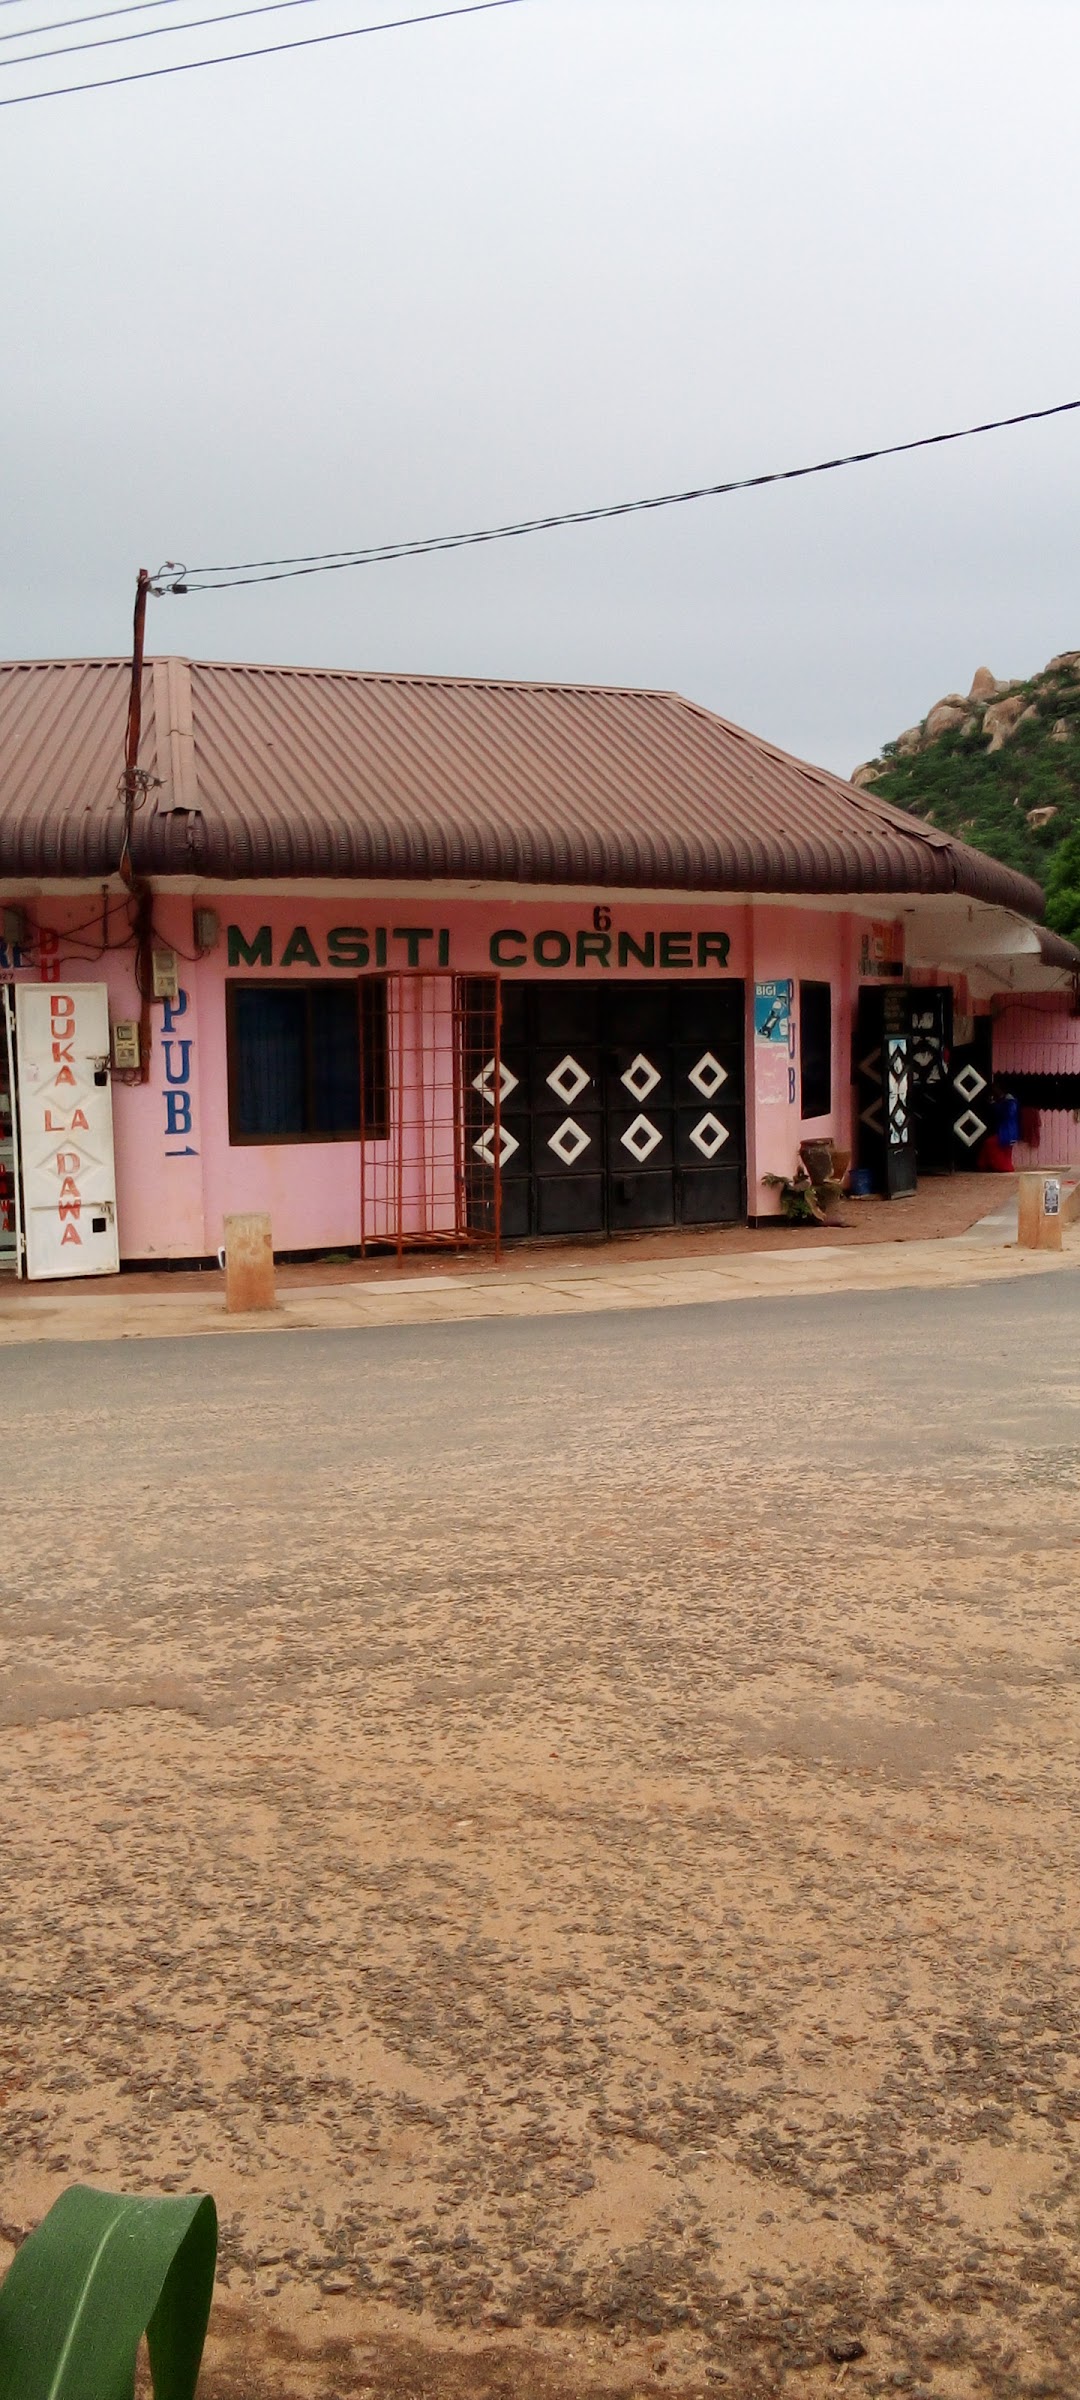 Masiti corner